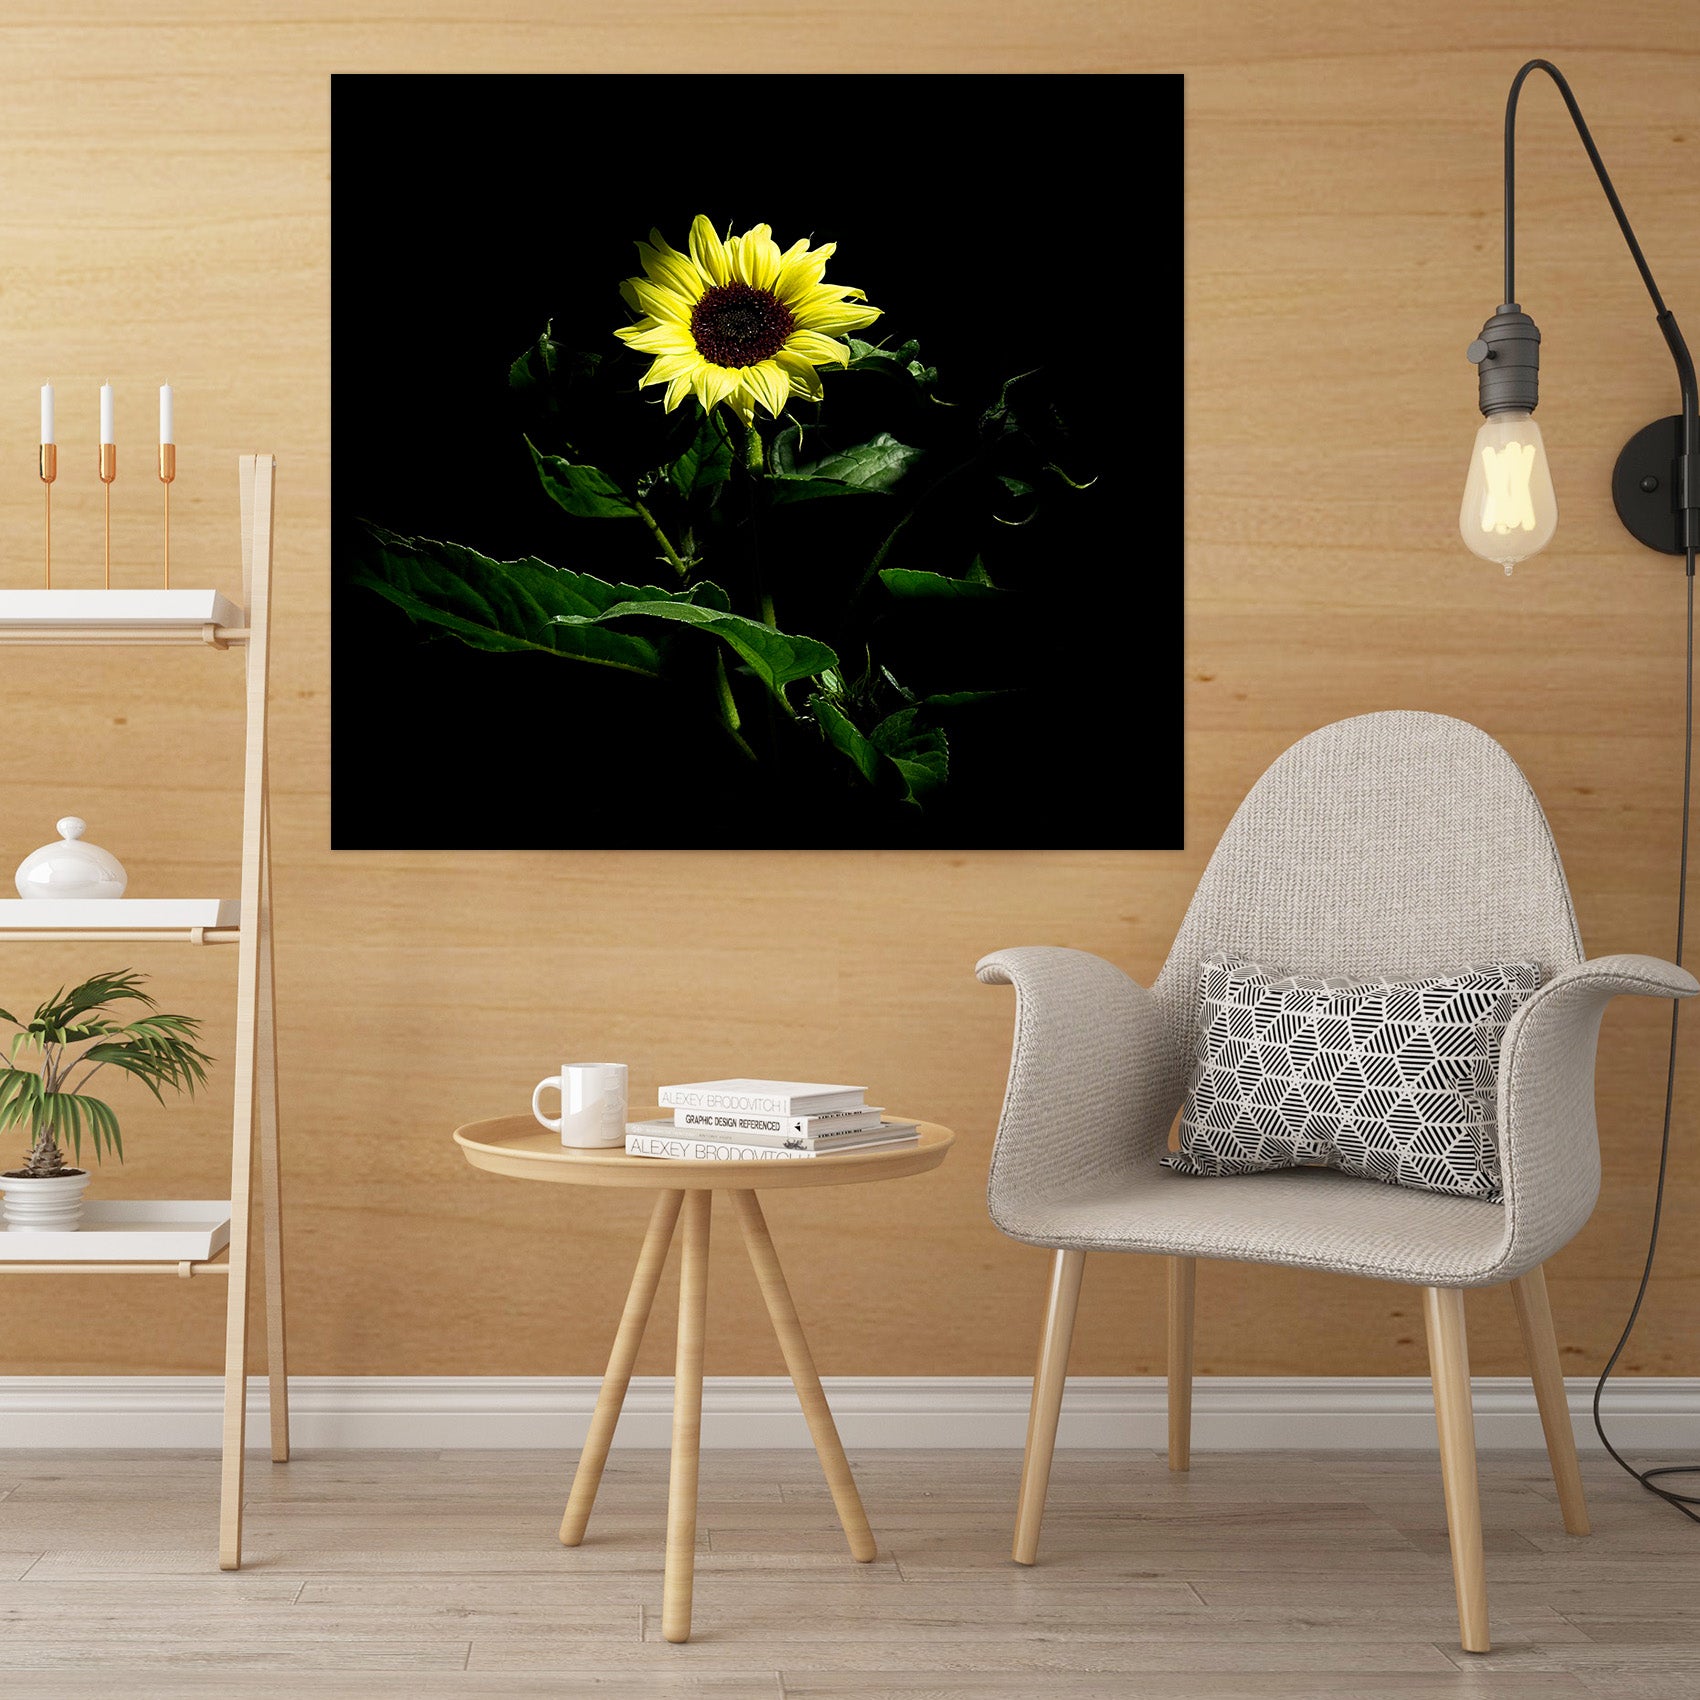 3D Sunflower 026 Kathy Barefield Wall Sticker